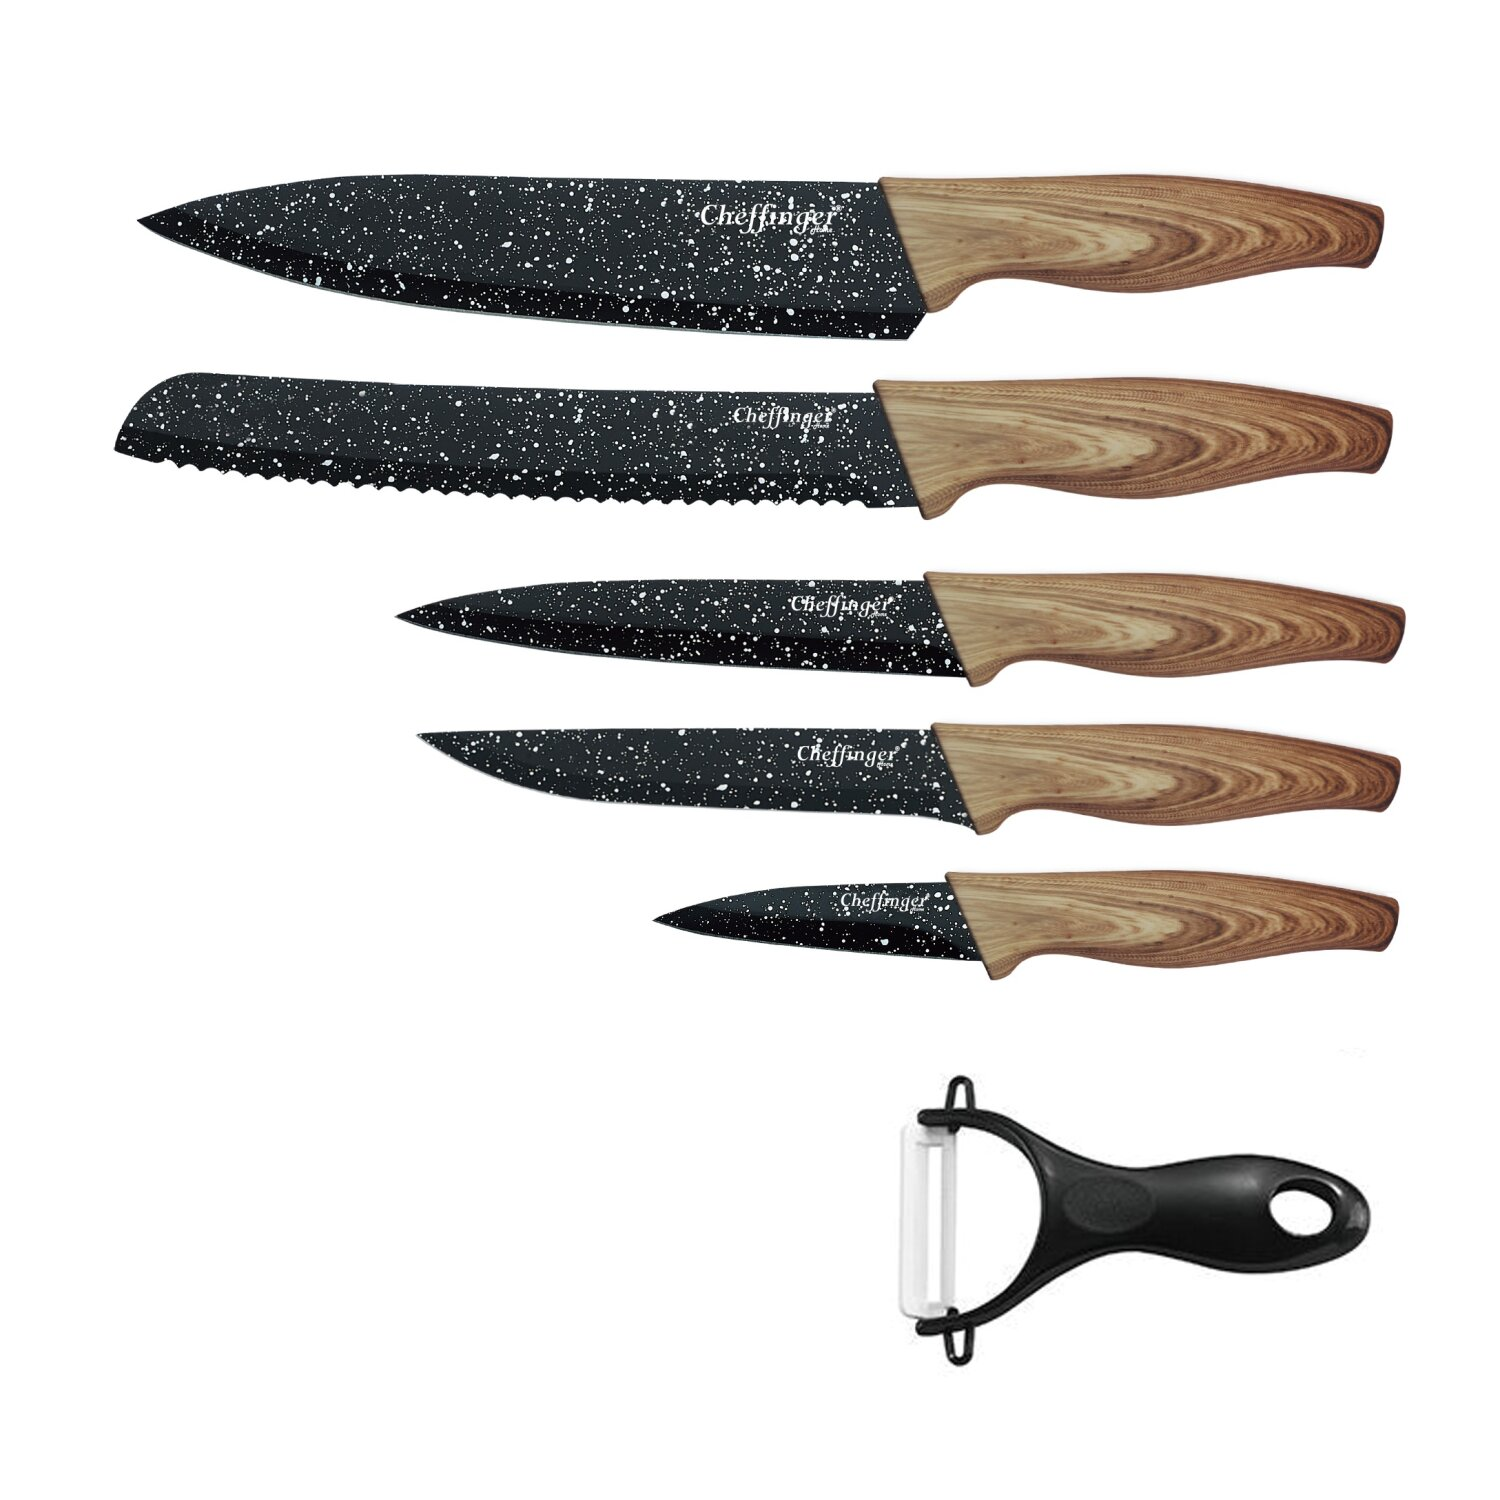 6 teiliges Messerset CHEFFINGER Messerset